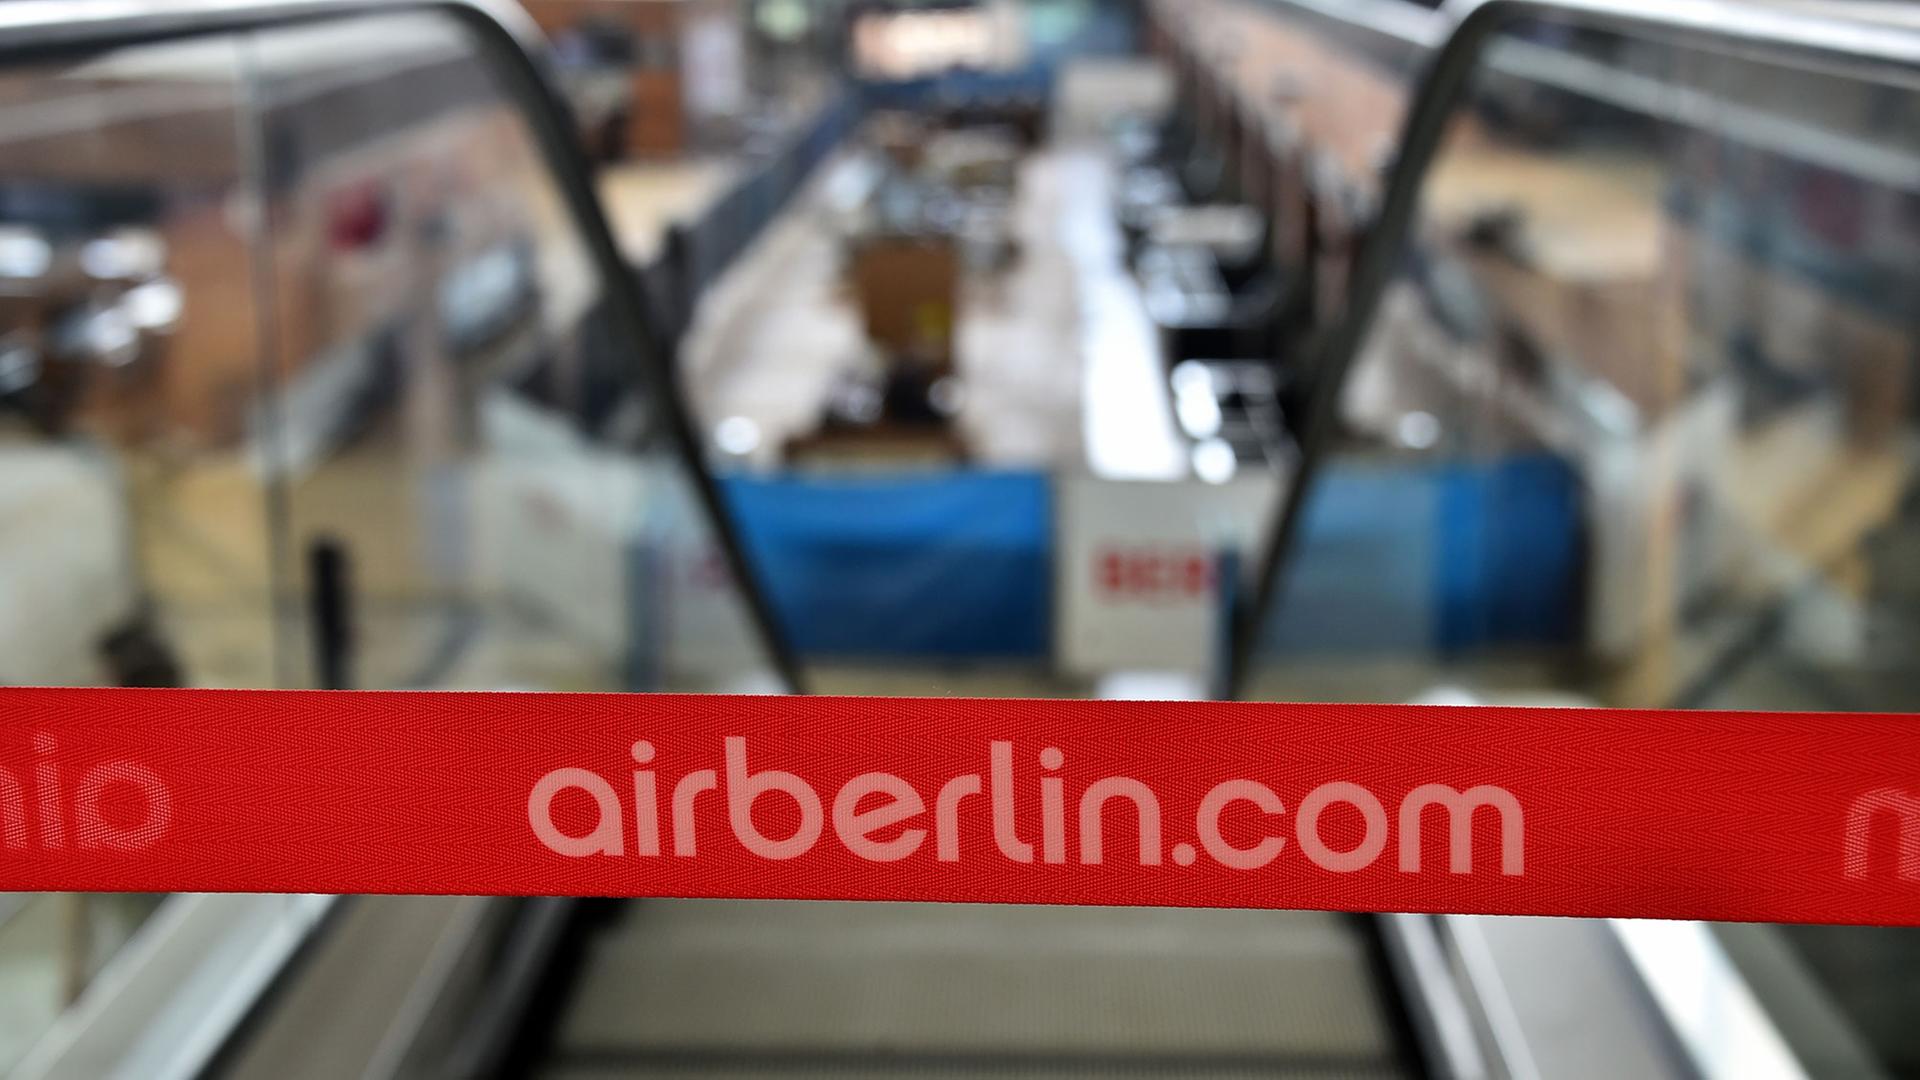 Der Schriftzug airberlin.com an einer Rolltreppe am Flughafen Berlin Brandenburg (BER)